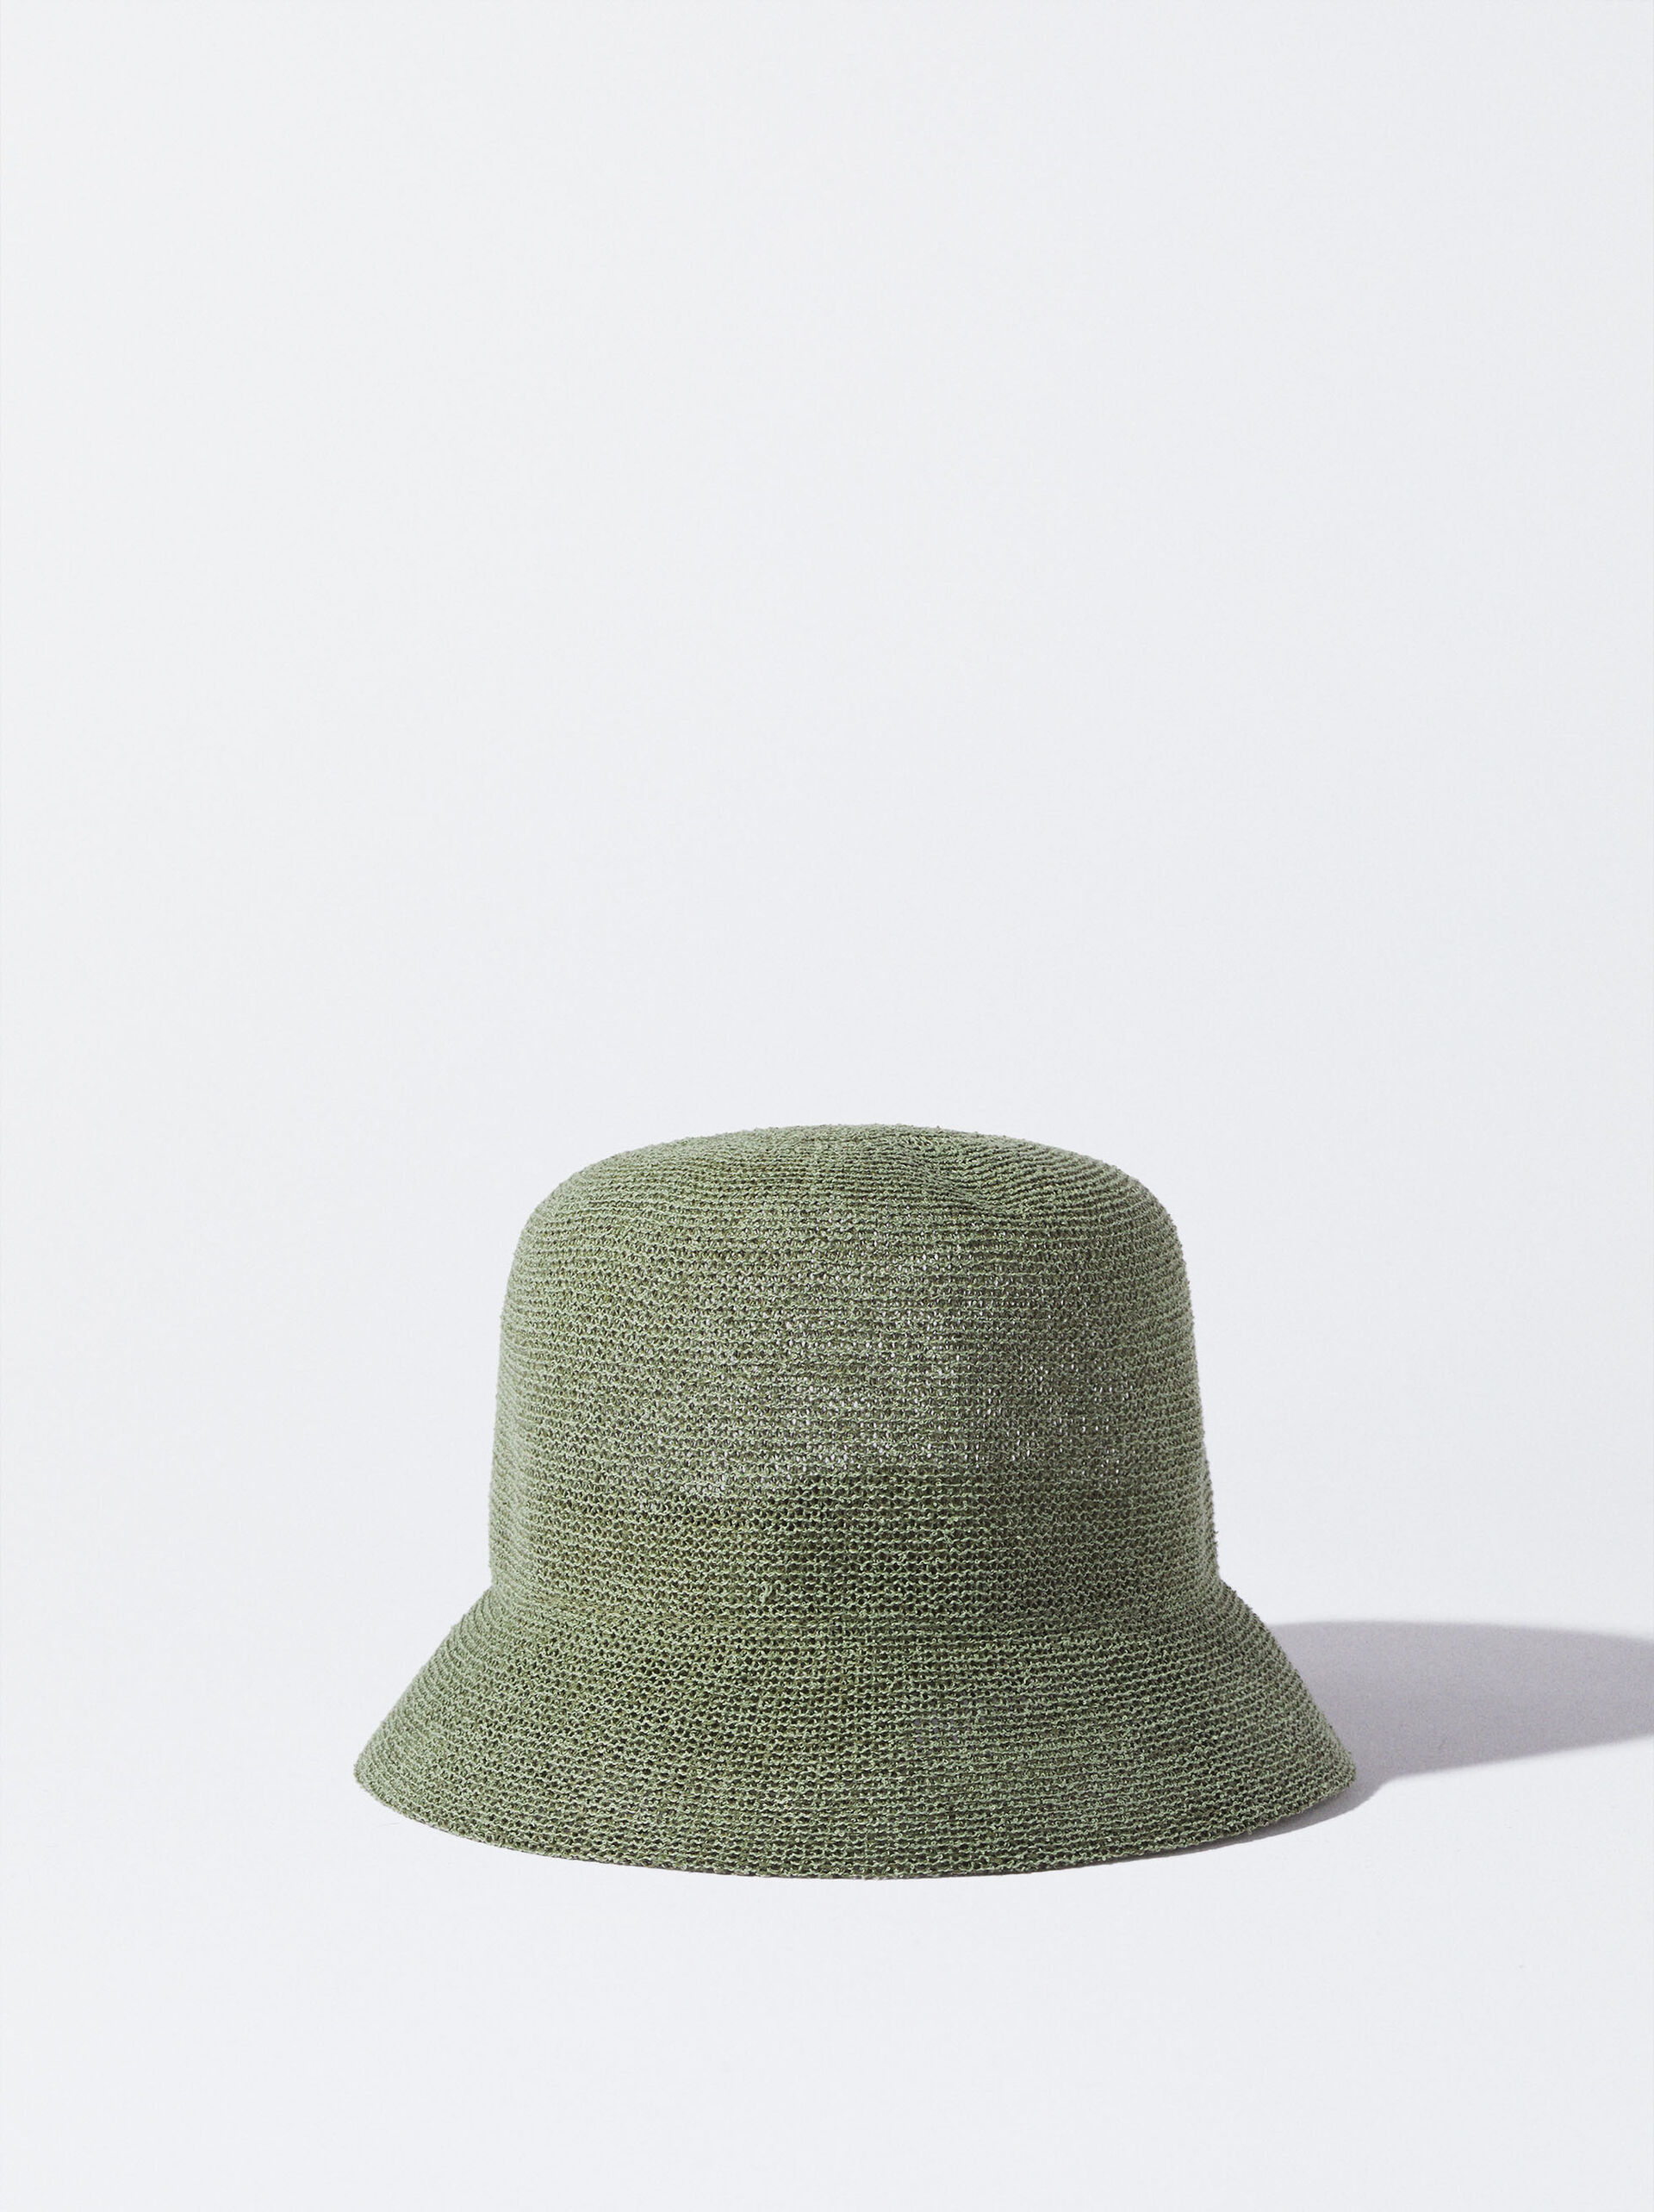 Knit Hat image number 0.0